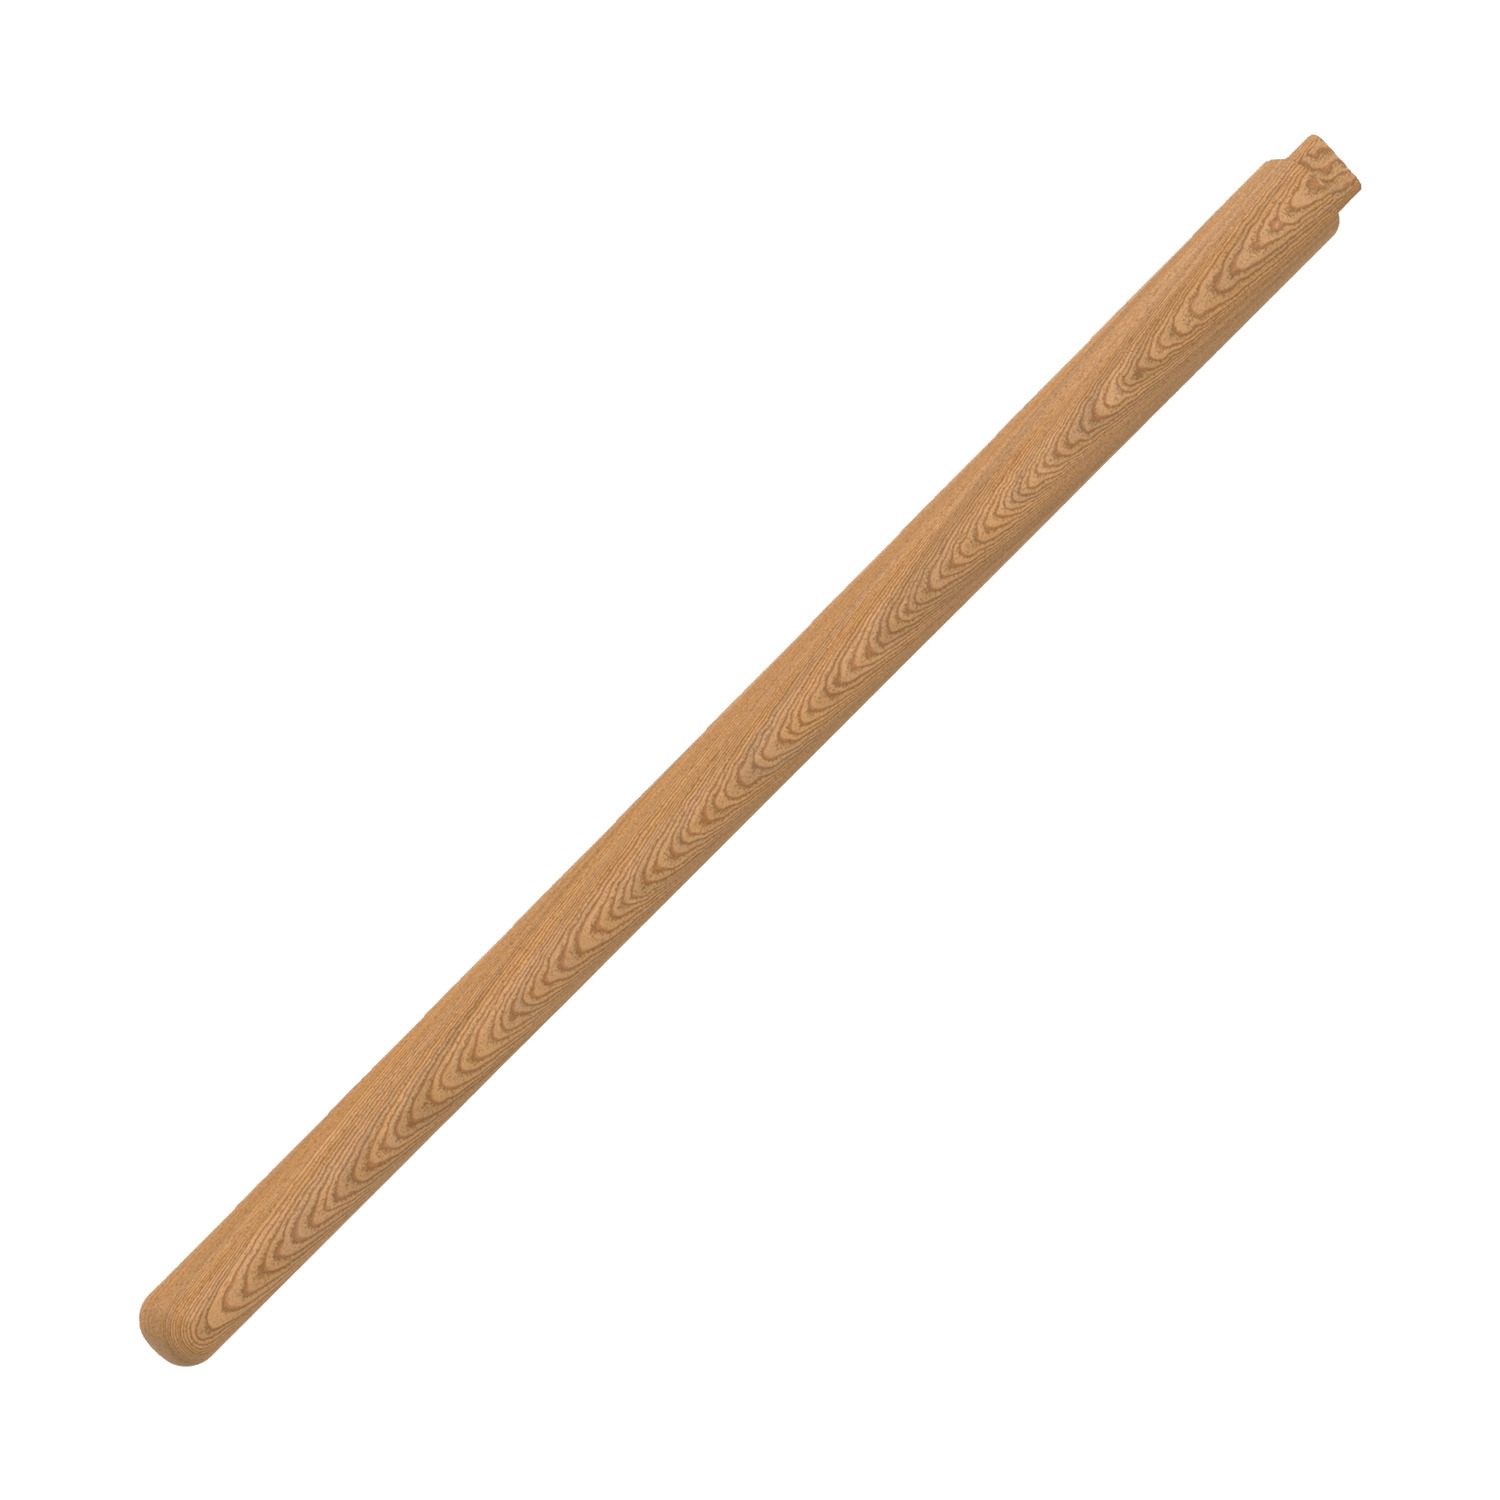 98362 Handle - Non-Rebound Sledgehammer